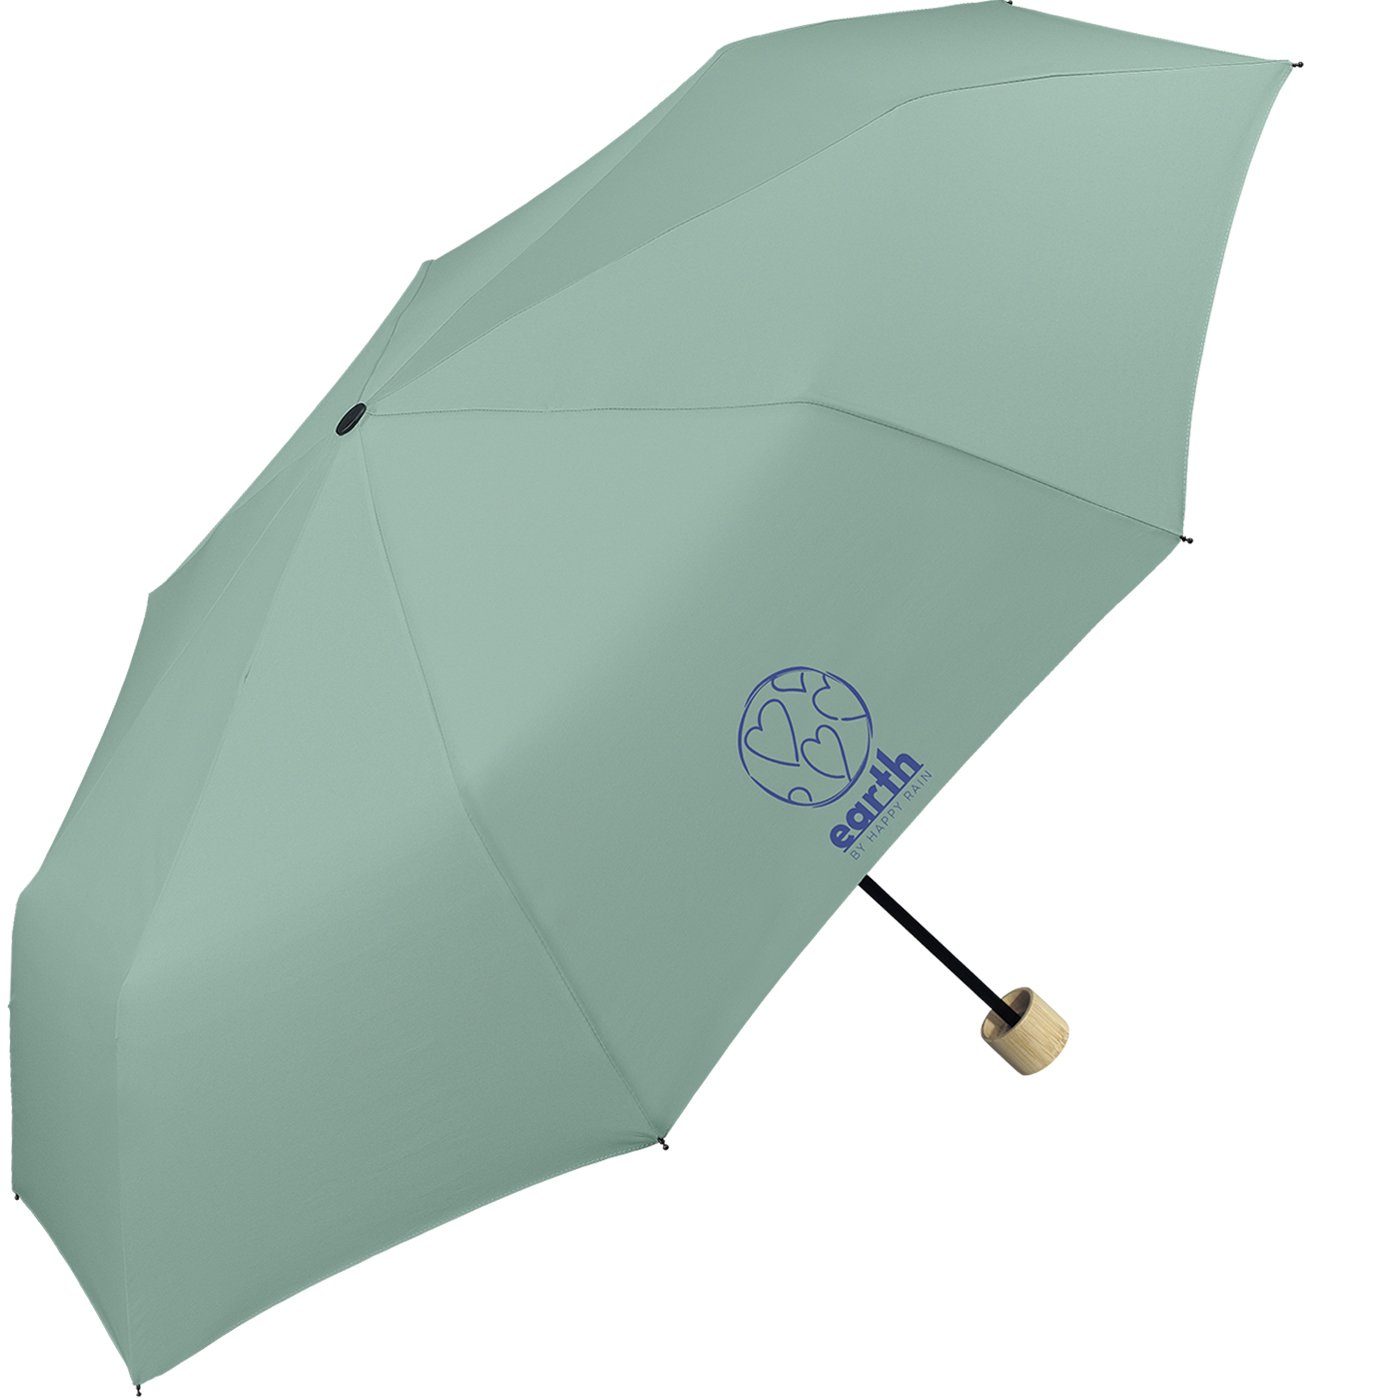 die RAIN etwas Earth geschützt stabiler tun Super-Mini-Schirm, nachhaltiger Taschenregenschirm türkis für Umwelt gut HAPPY -